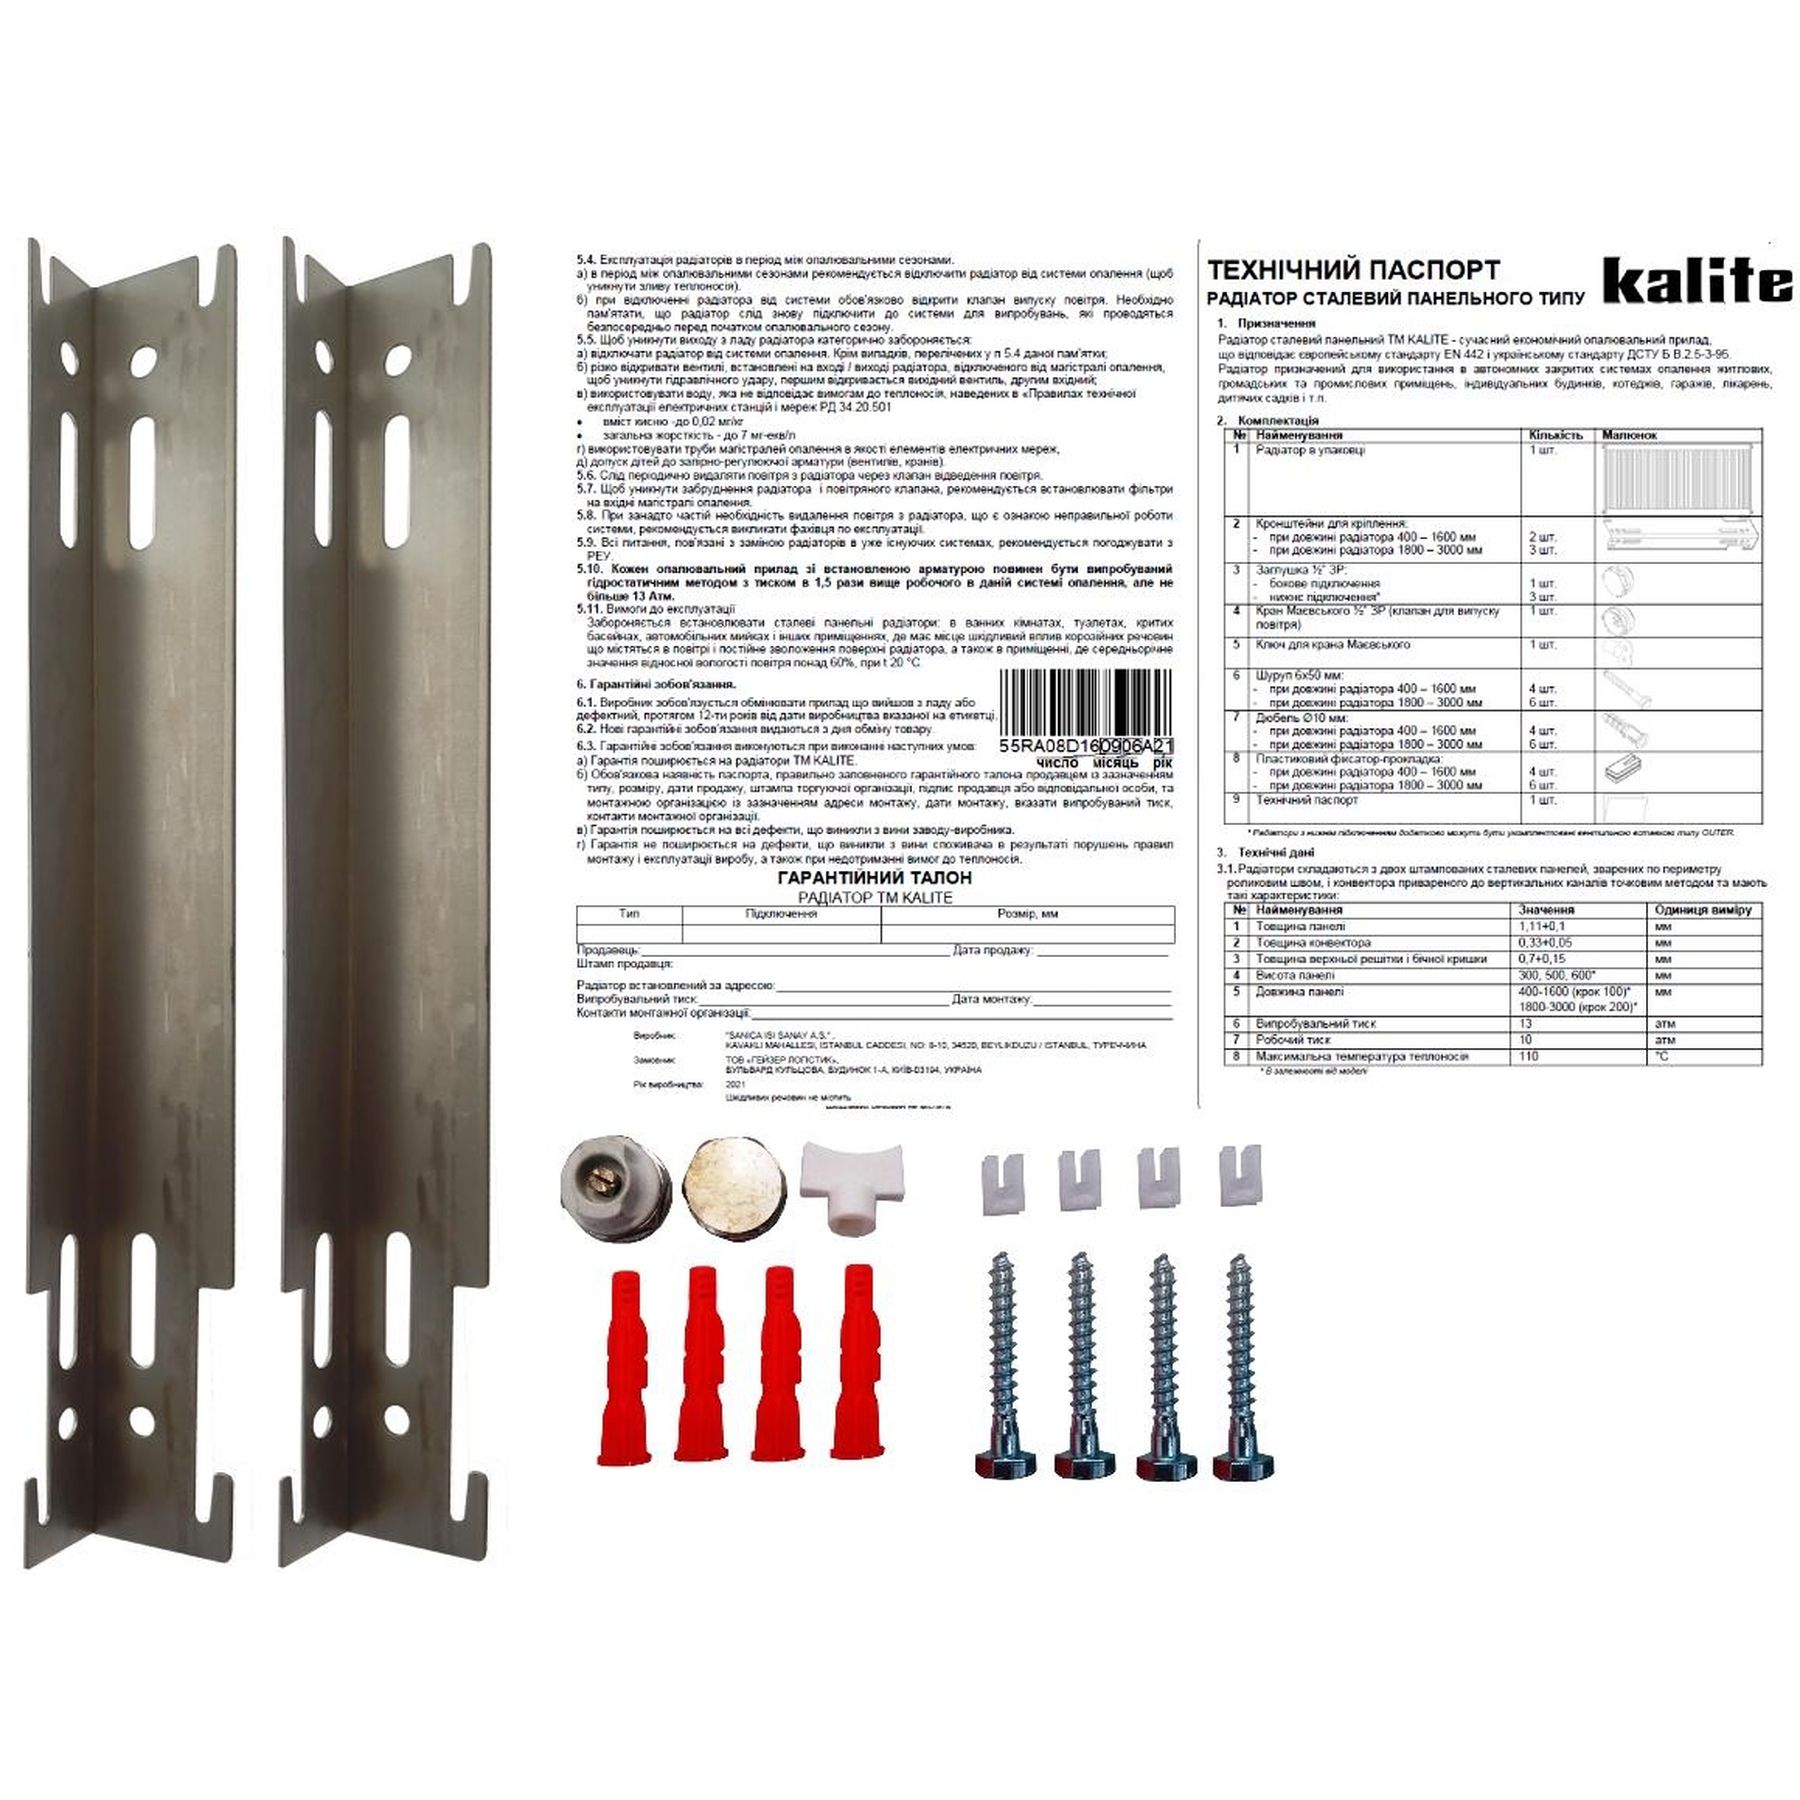 Радиатор для отопления Kalite 11 бок 500x900 цена 2401.00 грн - фотография 2